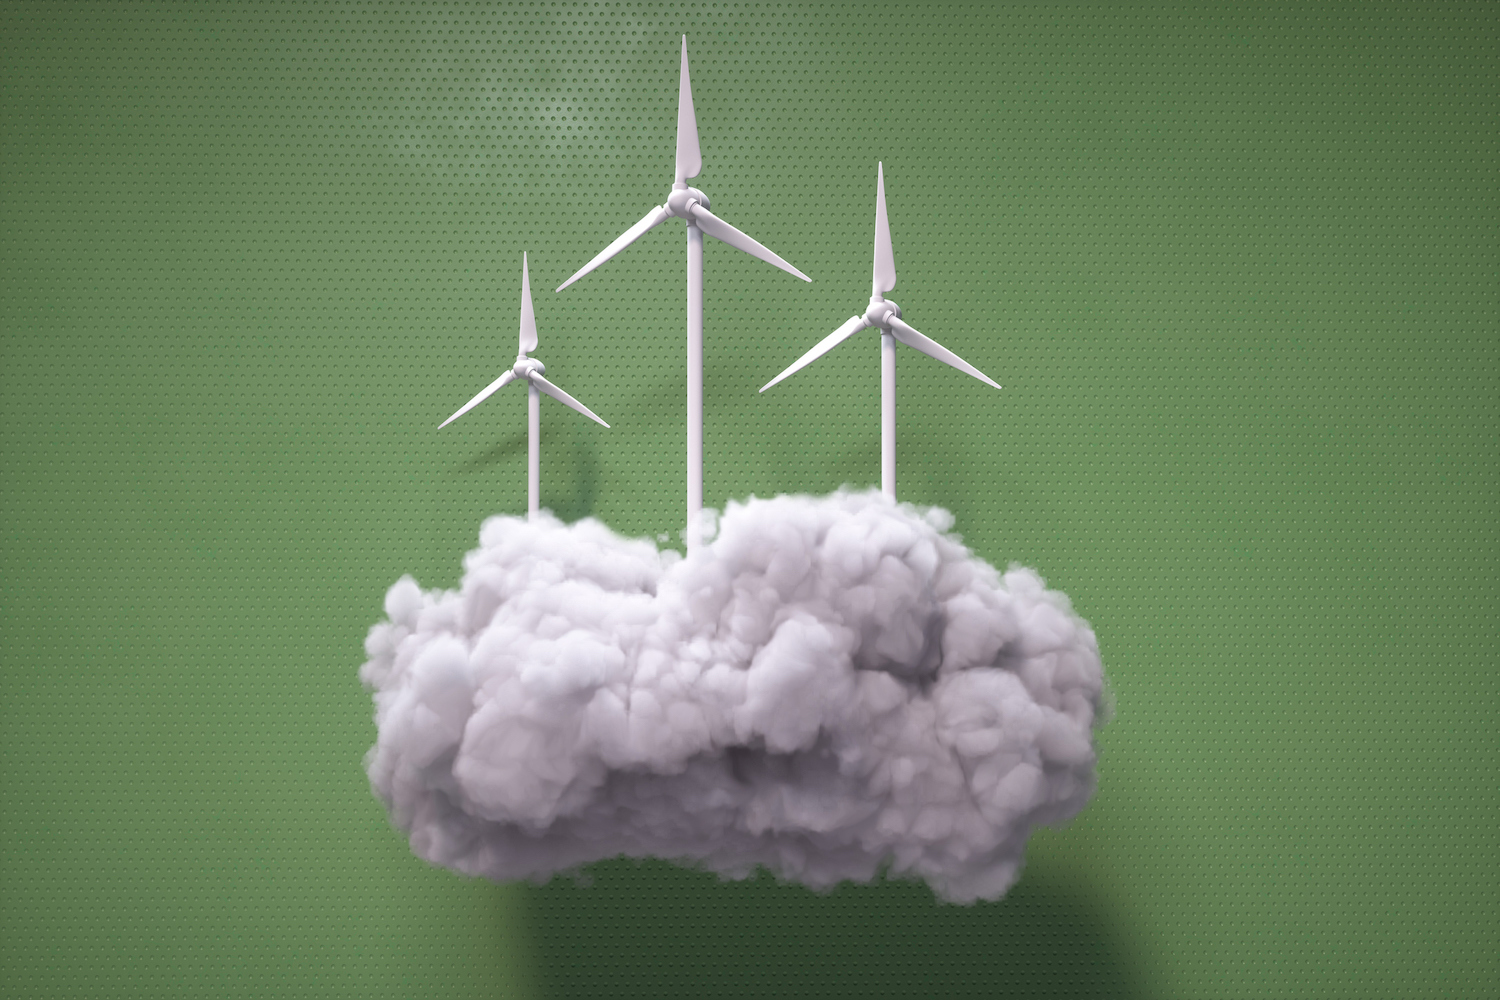 Image générée numériquement de plusieurs éoliennes sur un nuage gonflé sur fond vert.